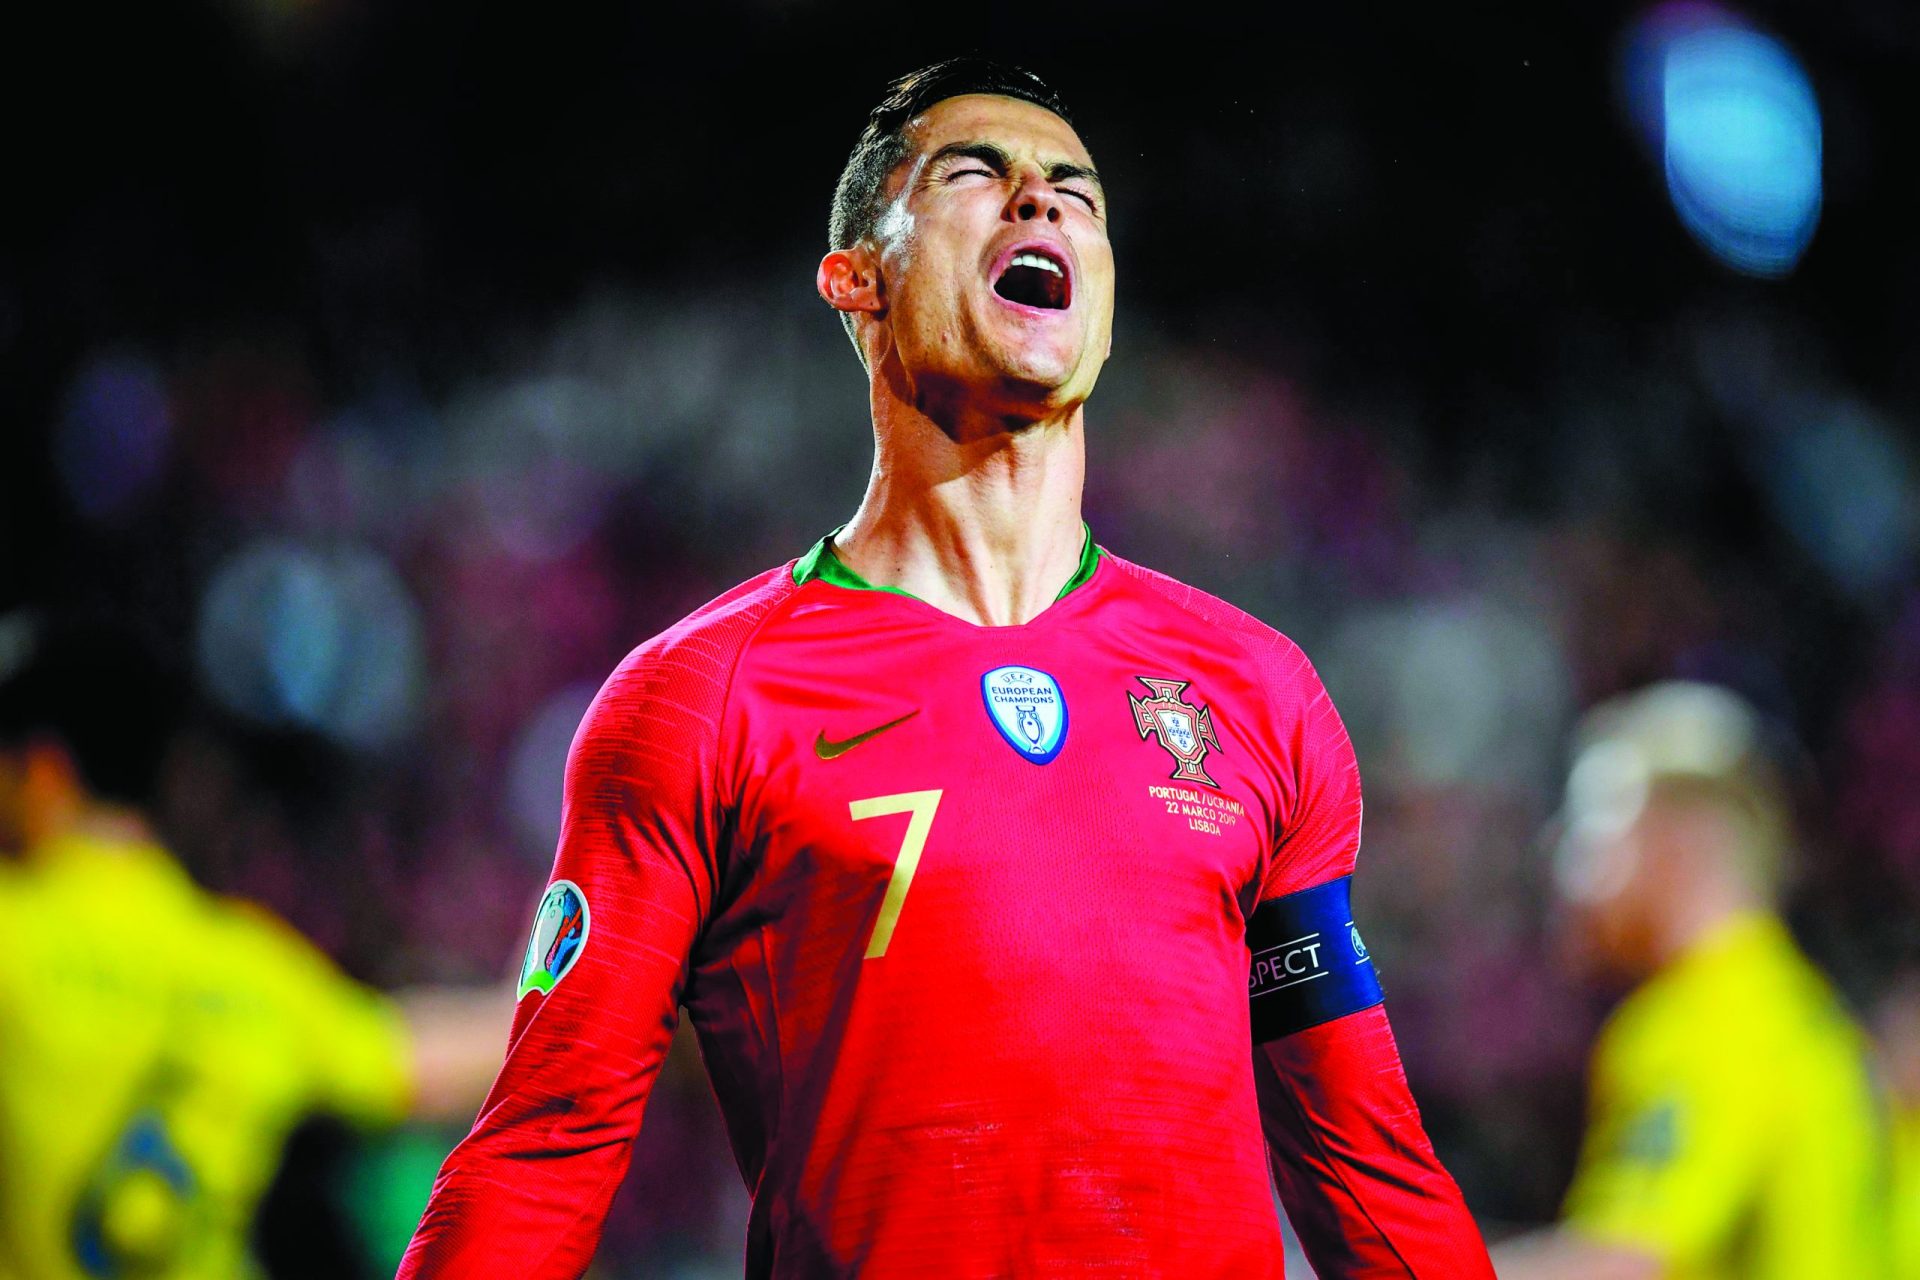 Cristiano Ronaldo mostra “orgulho” na seleção em nova fotografia